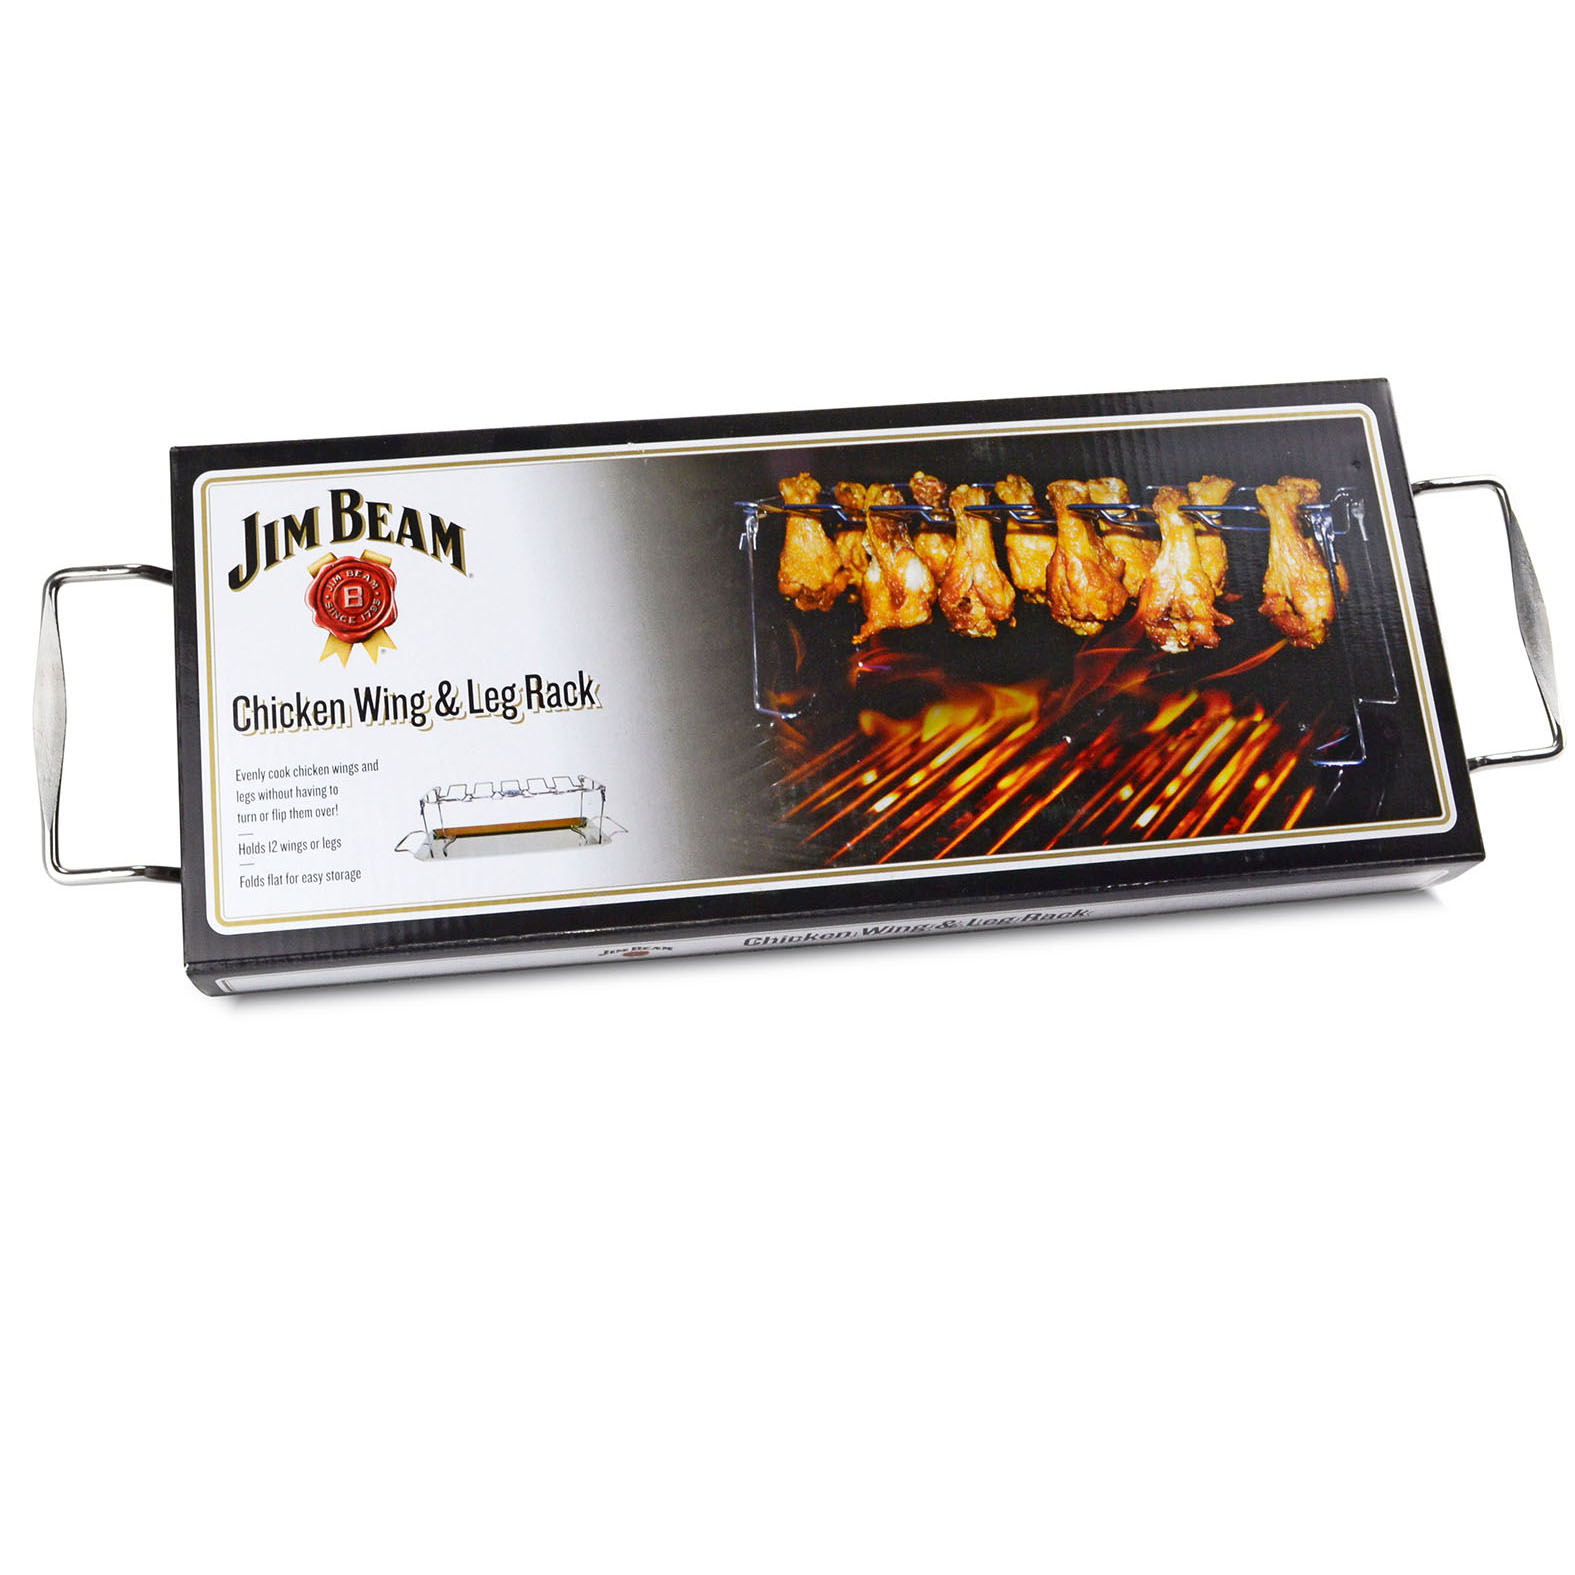 Jim Beam Chicken Wing Grillgestell mit Untersetzer, für 12 Hähnchenkeulen, Edelstahl, Drumstick, Grillhalter, knusprig grillen, Backofen Grill, JB0171